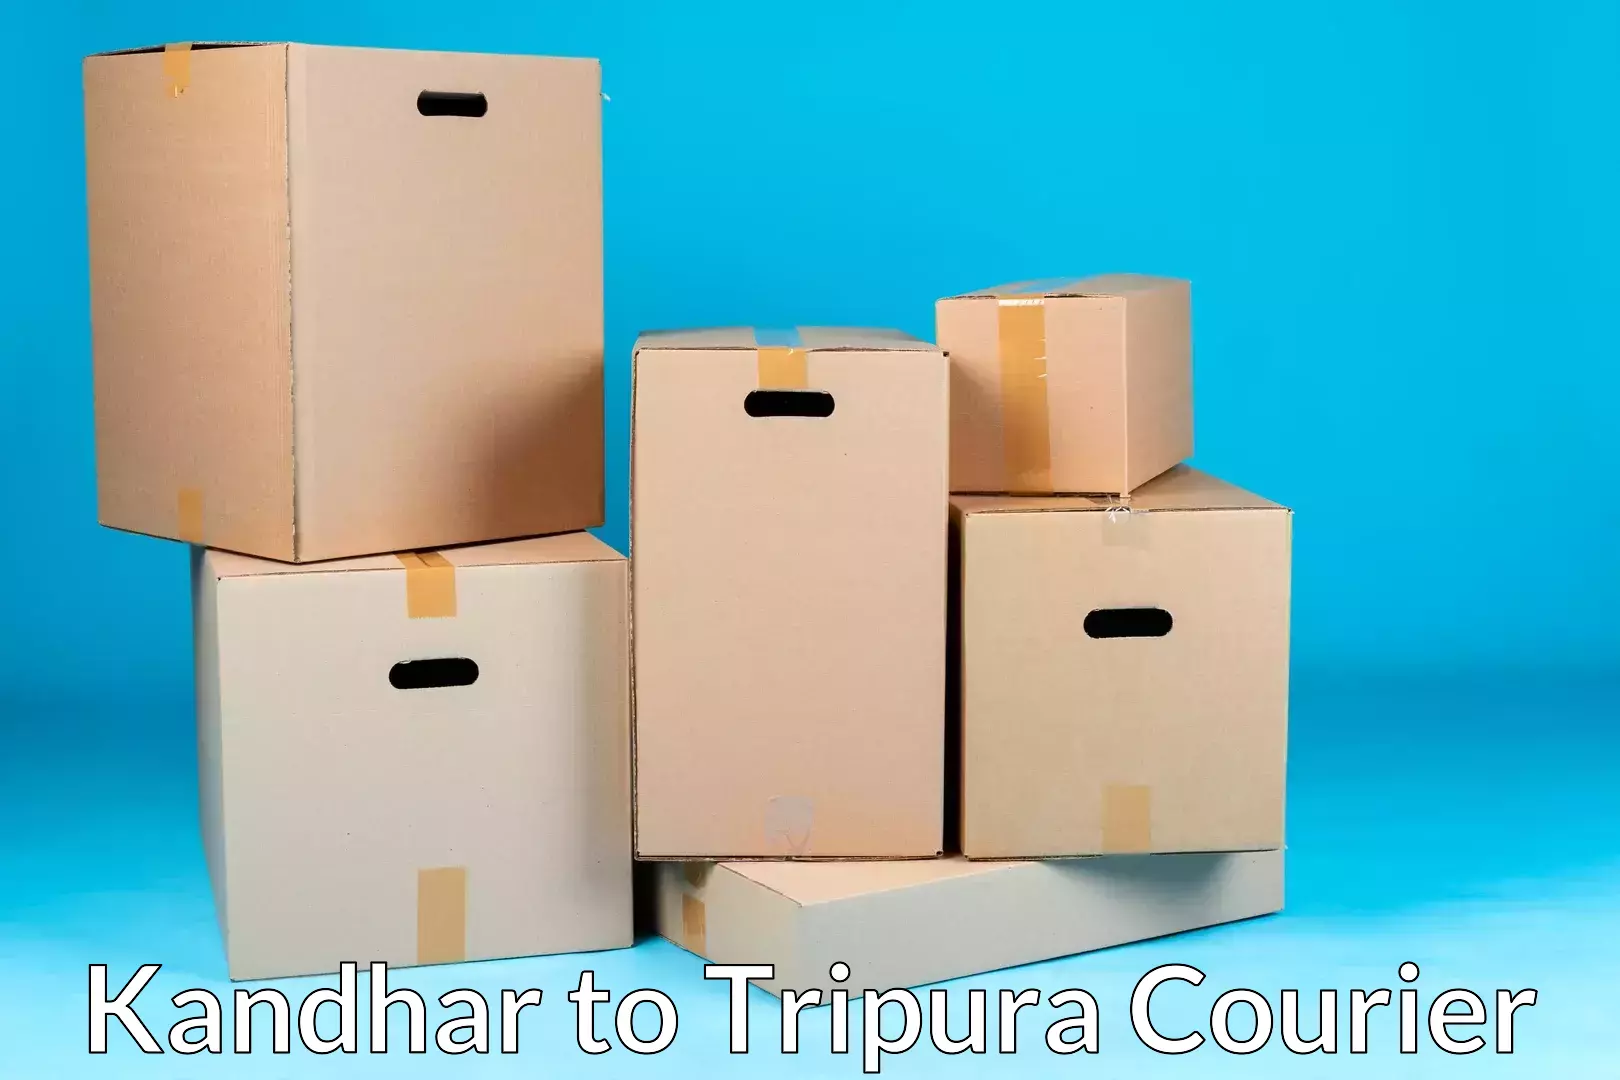 Furniture transport specialists Kandhar to Manughat